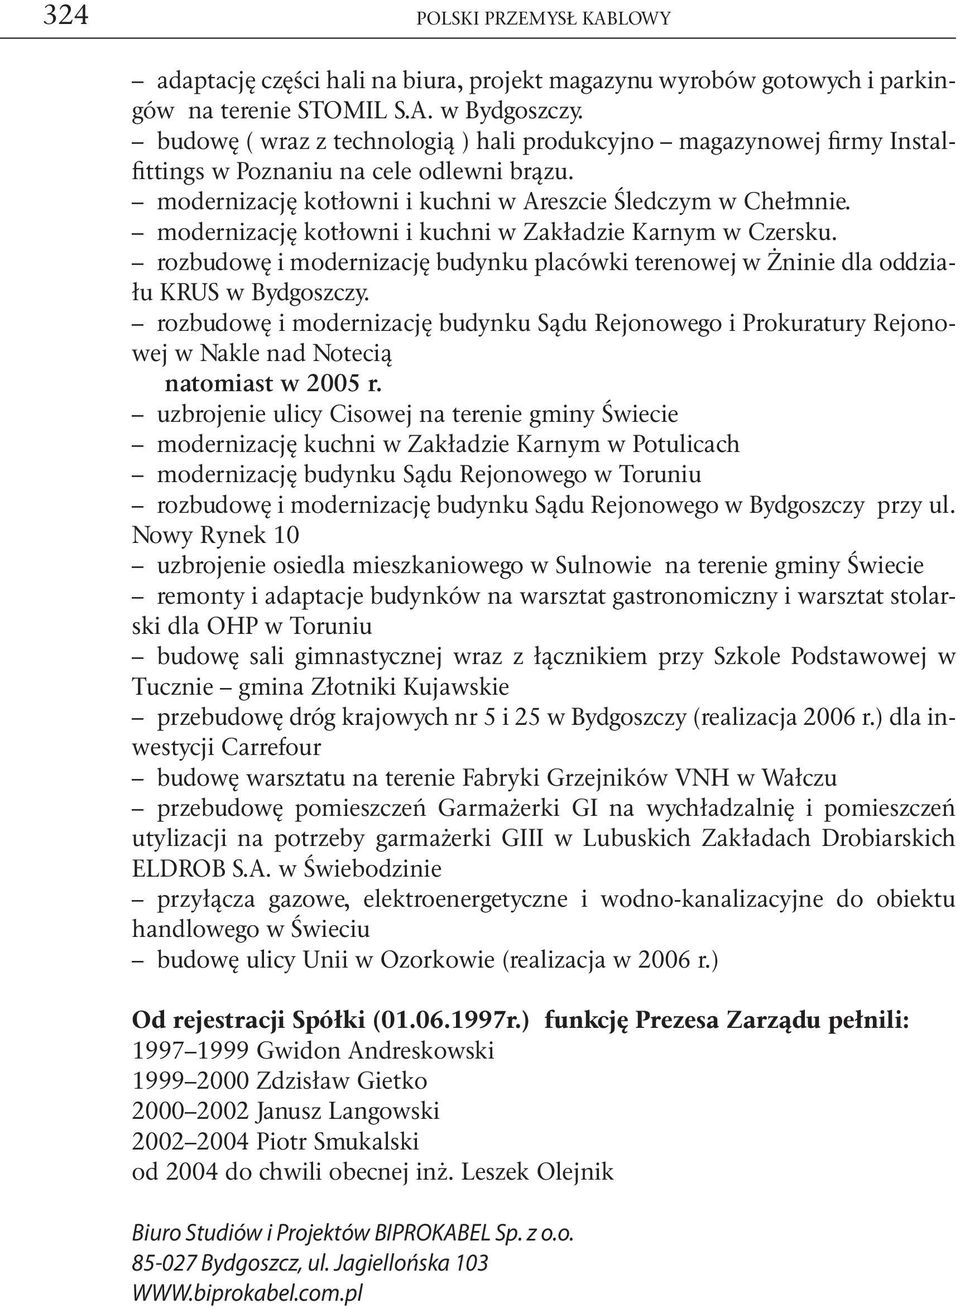 modernizację kotłowni i kuchni w Zakładzie Karnym w Czersku. rozbudowę i modernizację budynku placówki terenowej w Żninie dla oddziału KRUS w Bydgoszczy.